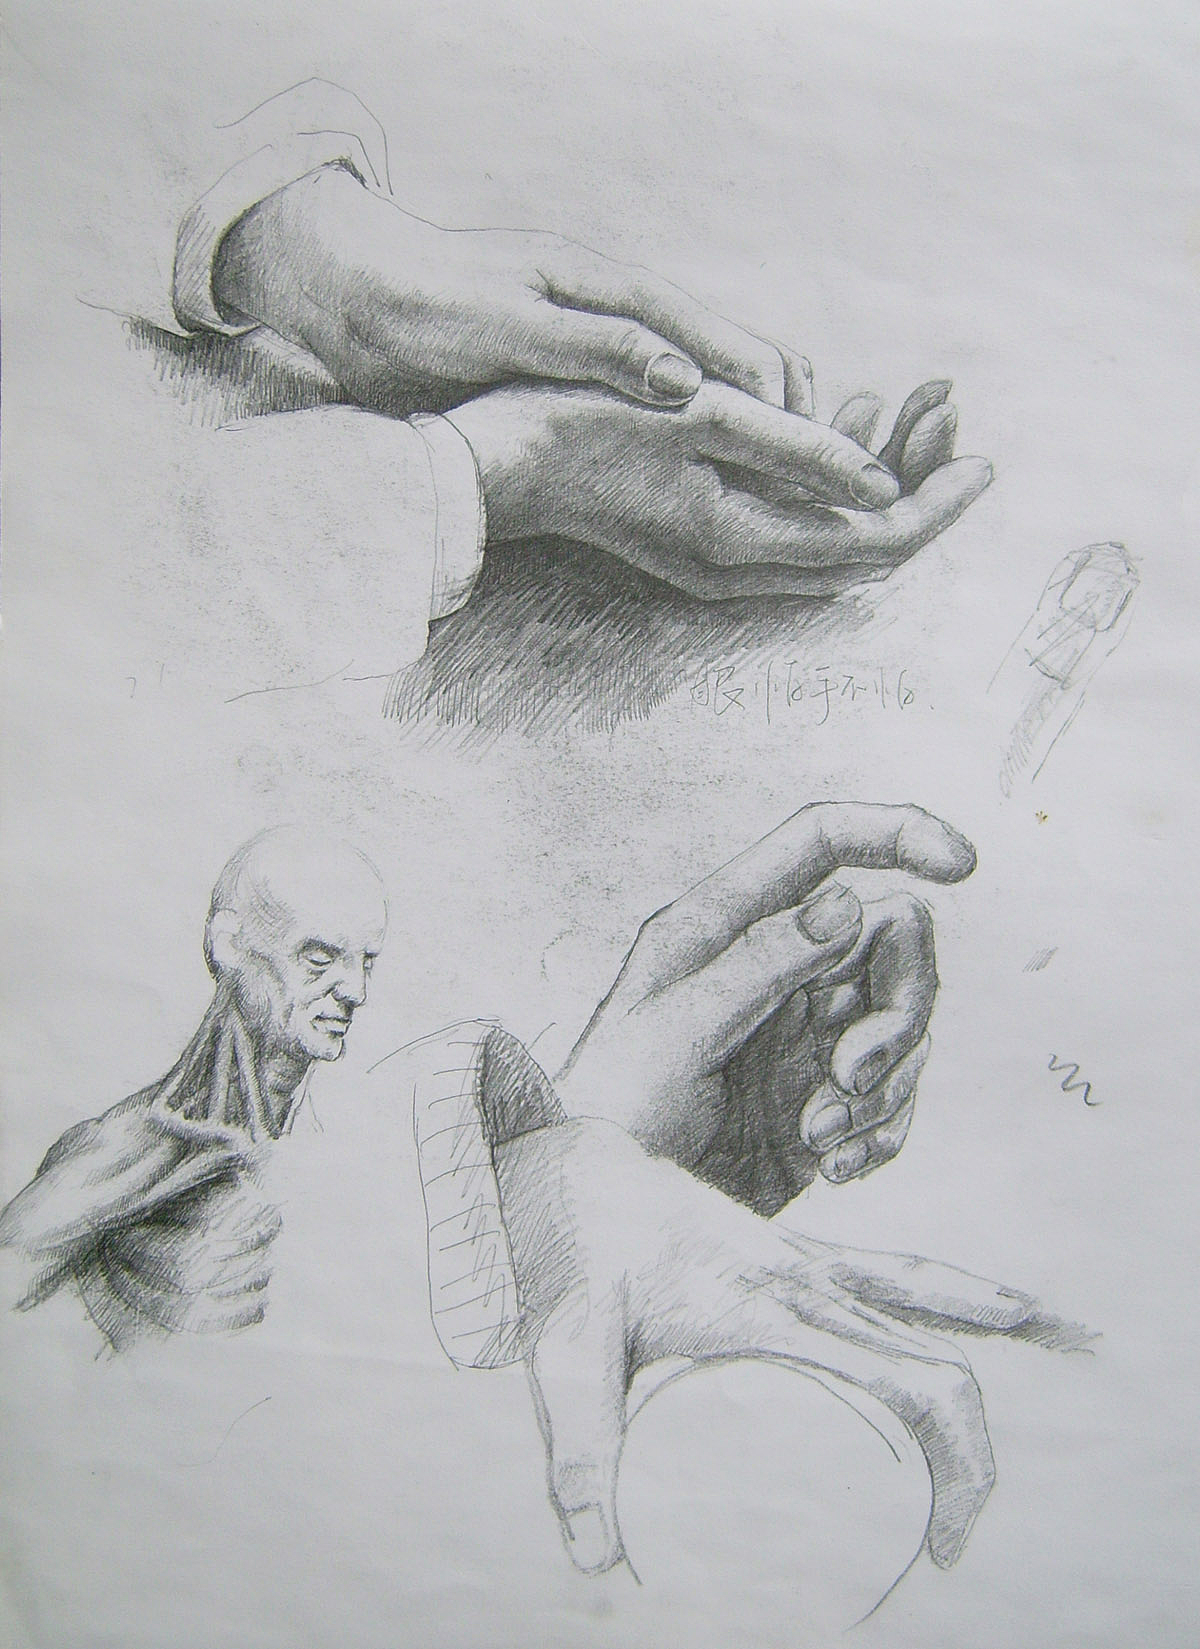 声明一下,中间的那个手,是用本人的右手画的本人左手,是临摹上面的手